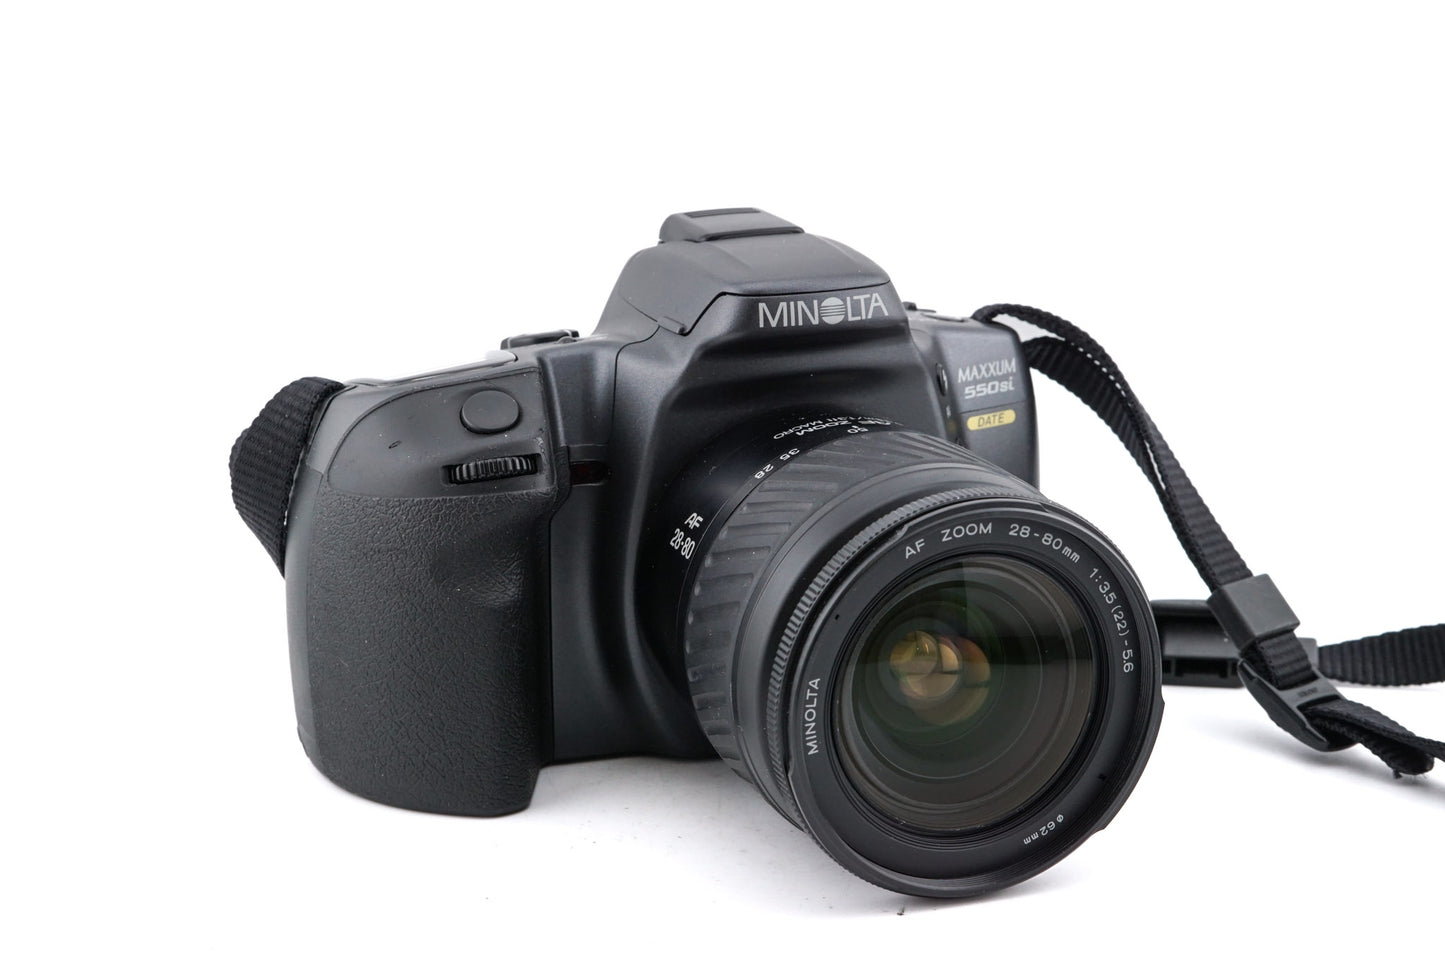 Minolta Maxxum 550si Date + 28-80mm f3.5-5.6 AF Zoom Macro